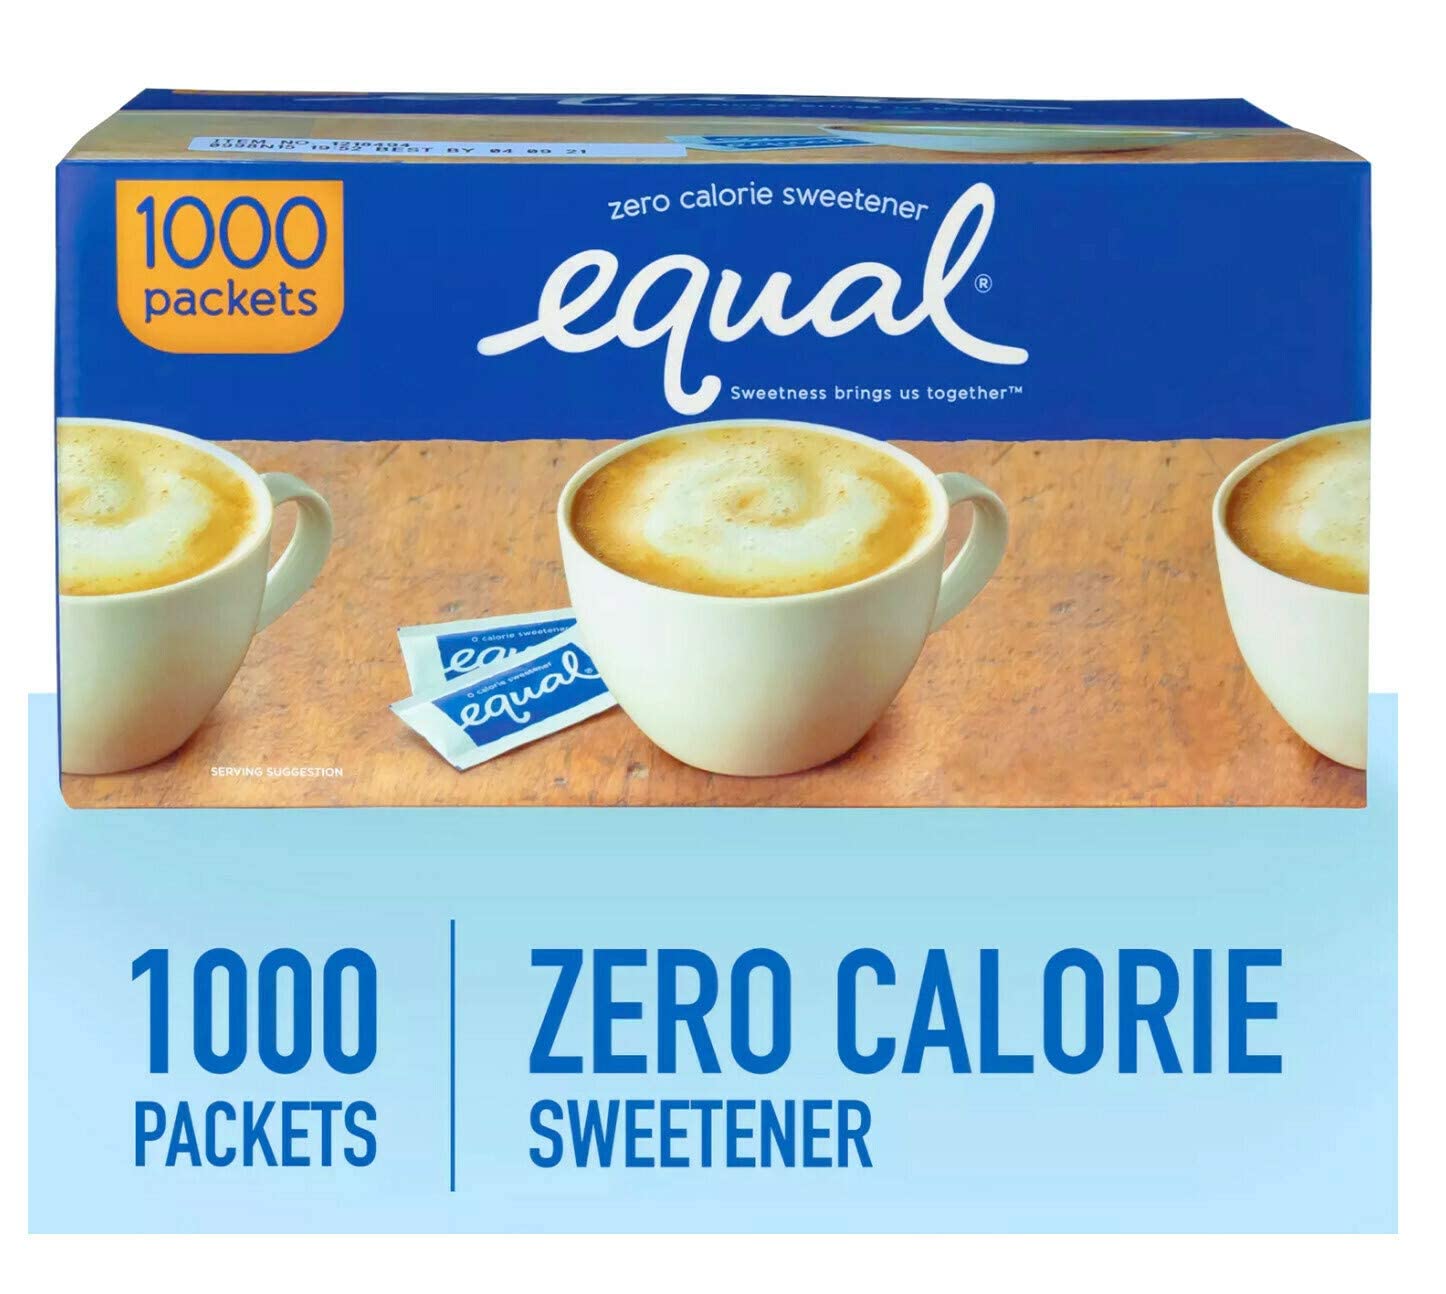 Image of Equal Zero Calorie Sweetener (1,000 ct.)